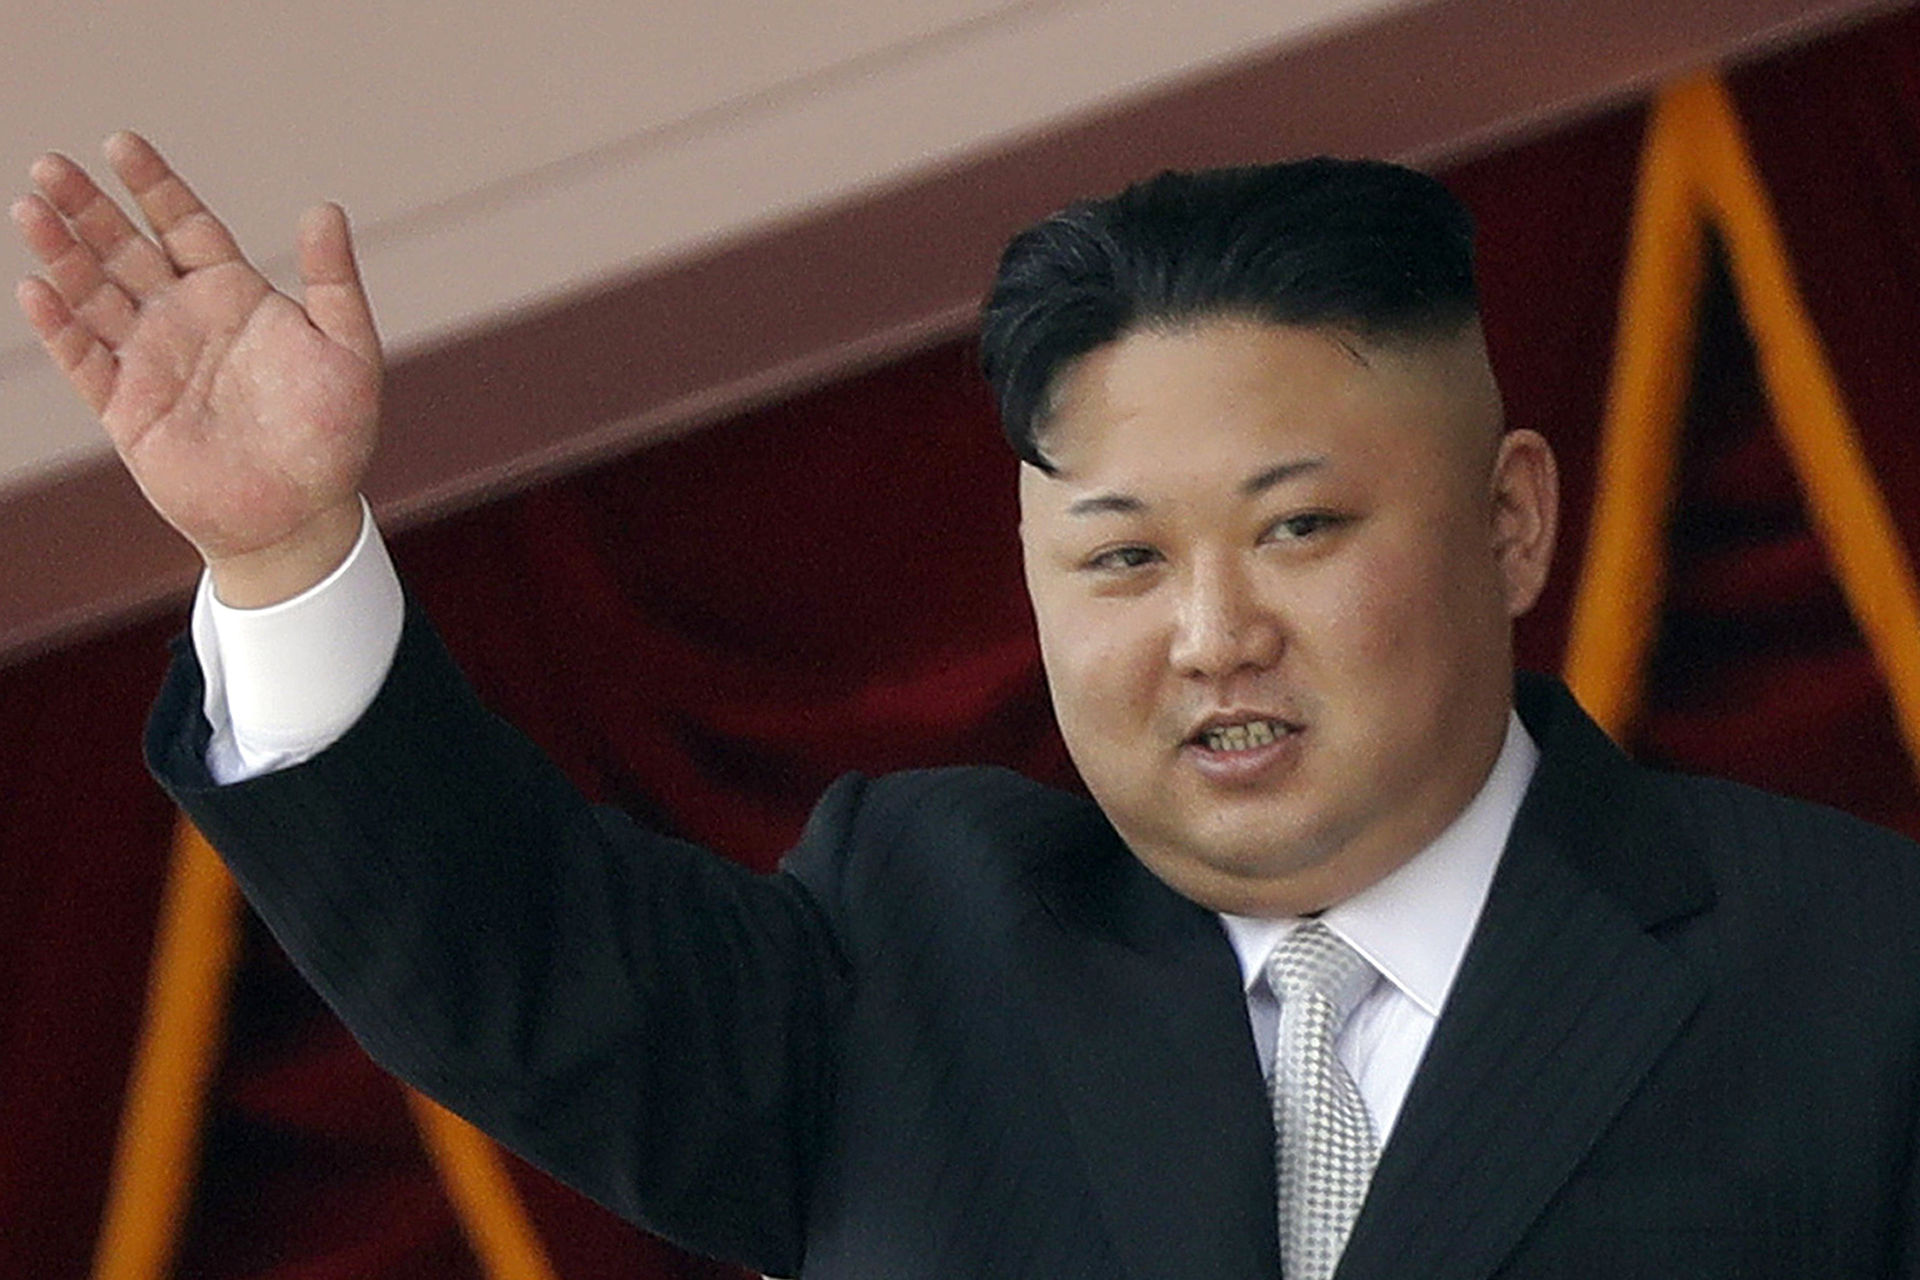 Chủ tịch Triều Tiên Kim Jong Un.